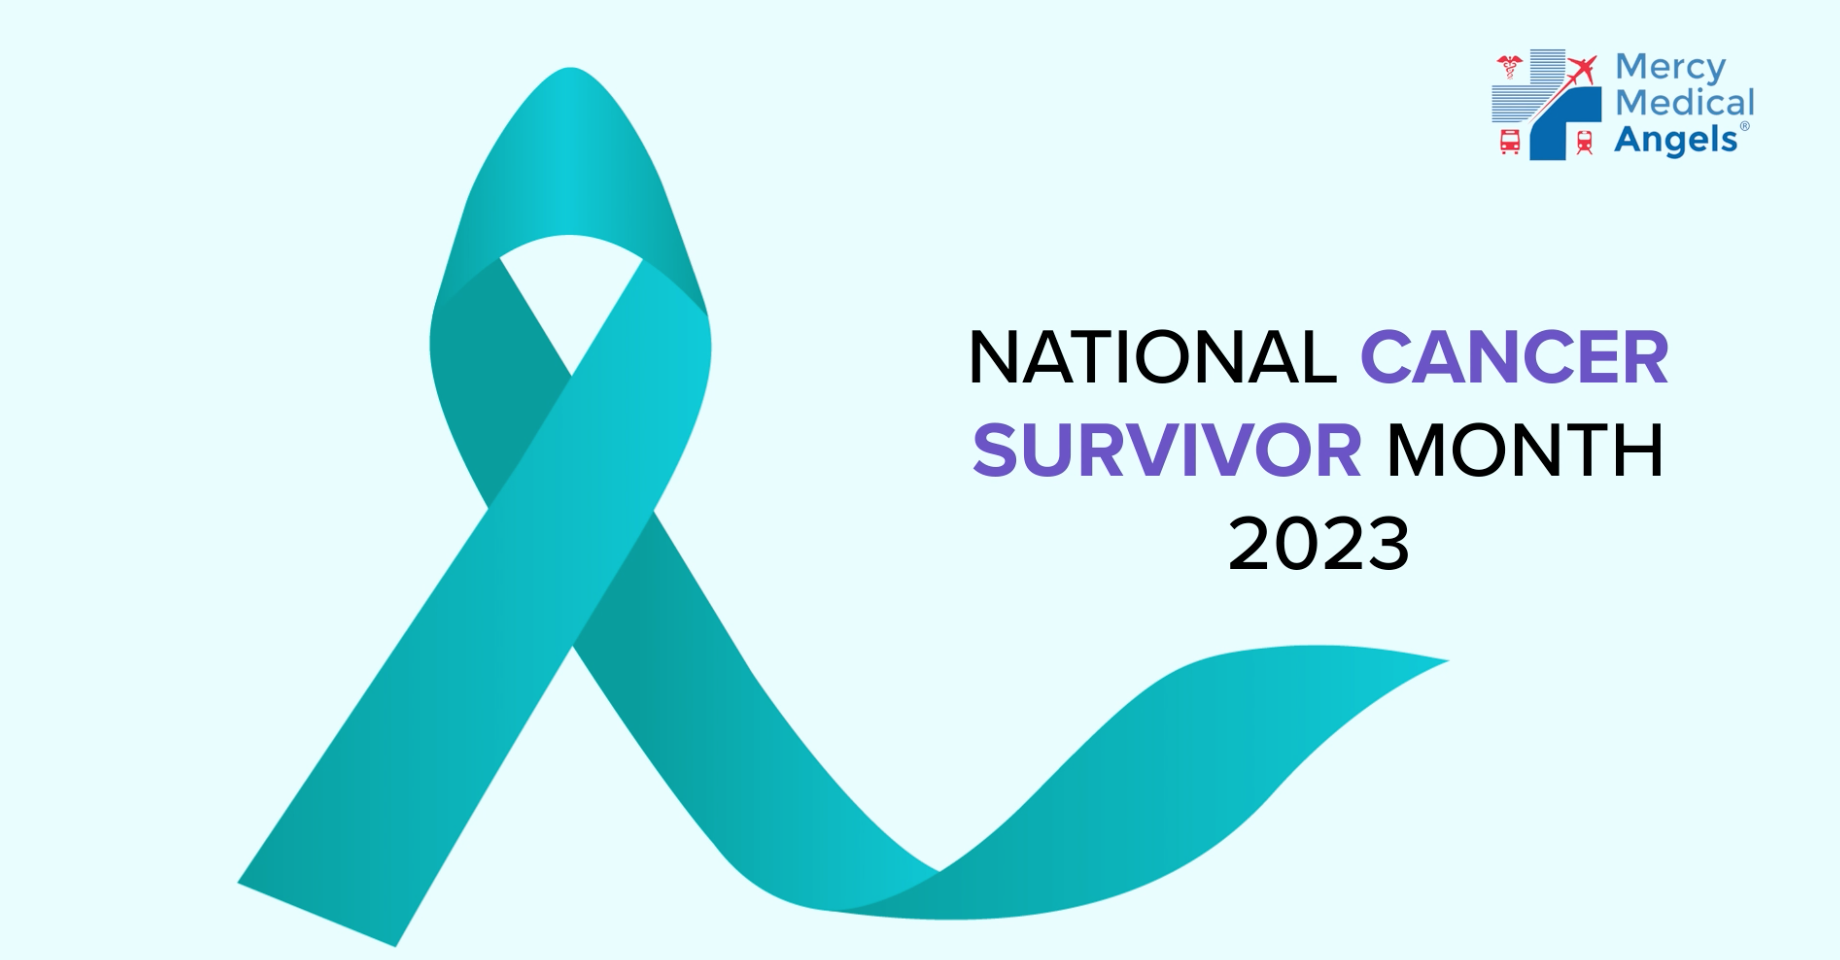 Video for National Cancer Survivor Month 2023